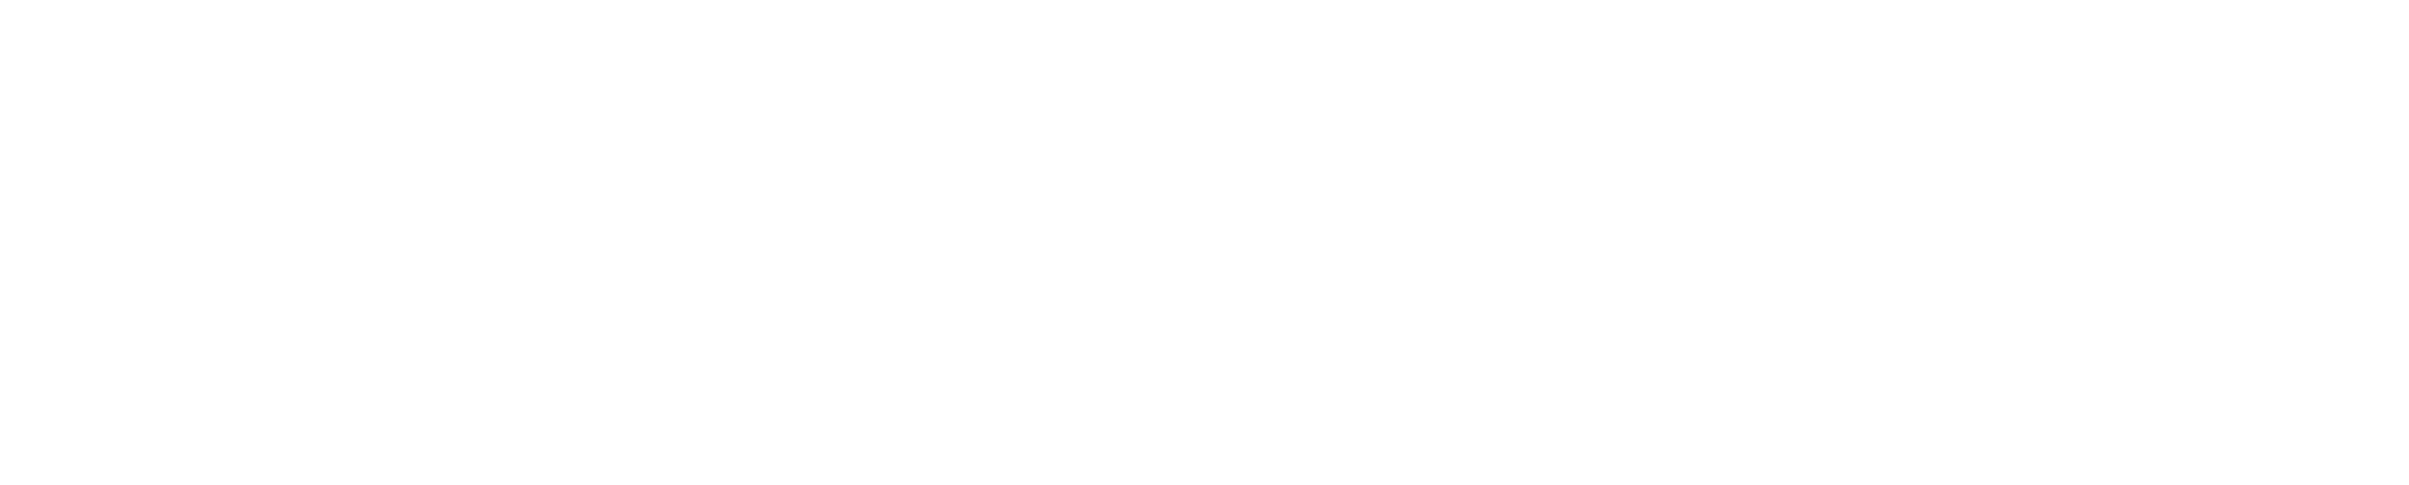 Cruise Logos-01